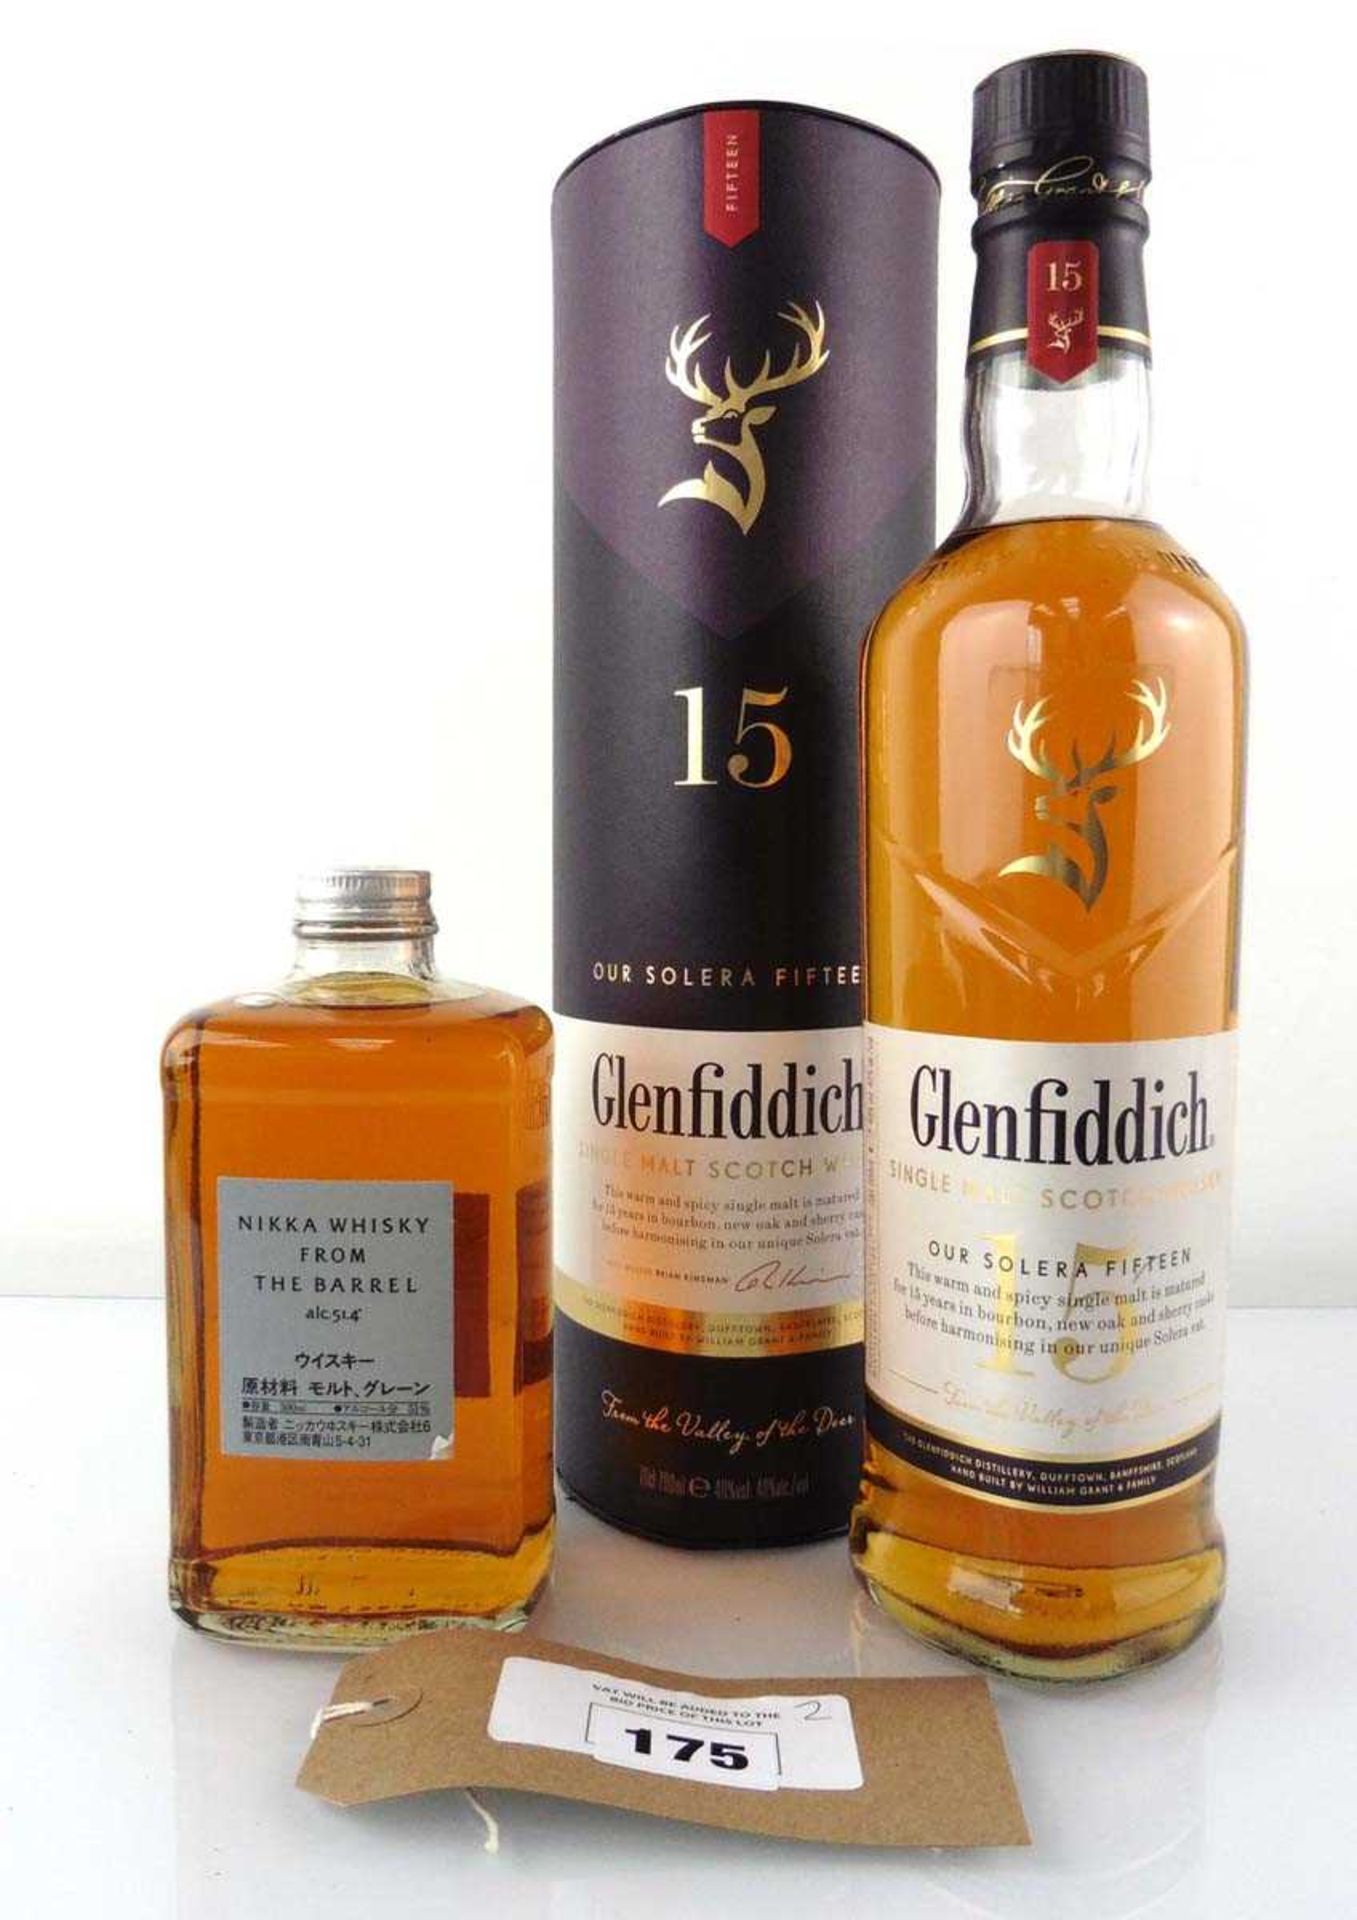 +VAT 2 bottles, 1x Glenfiddich Our Solera Fifteen Single Malt Scotch Whisky with carton 70cl 40% &